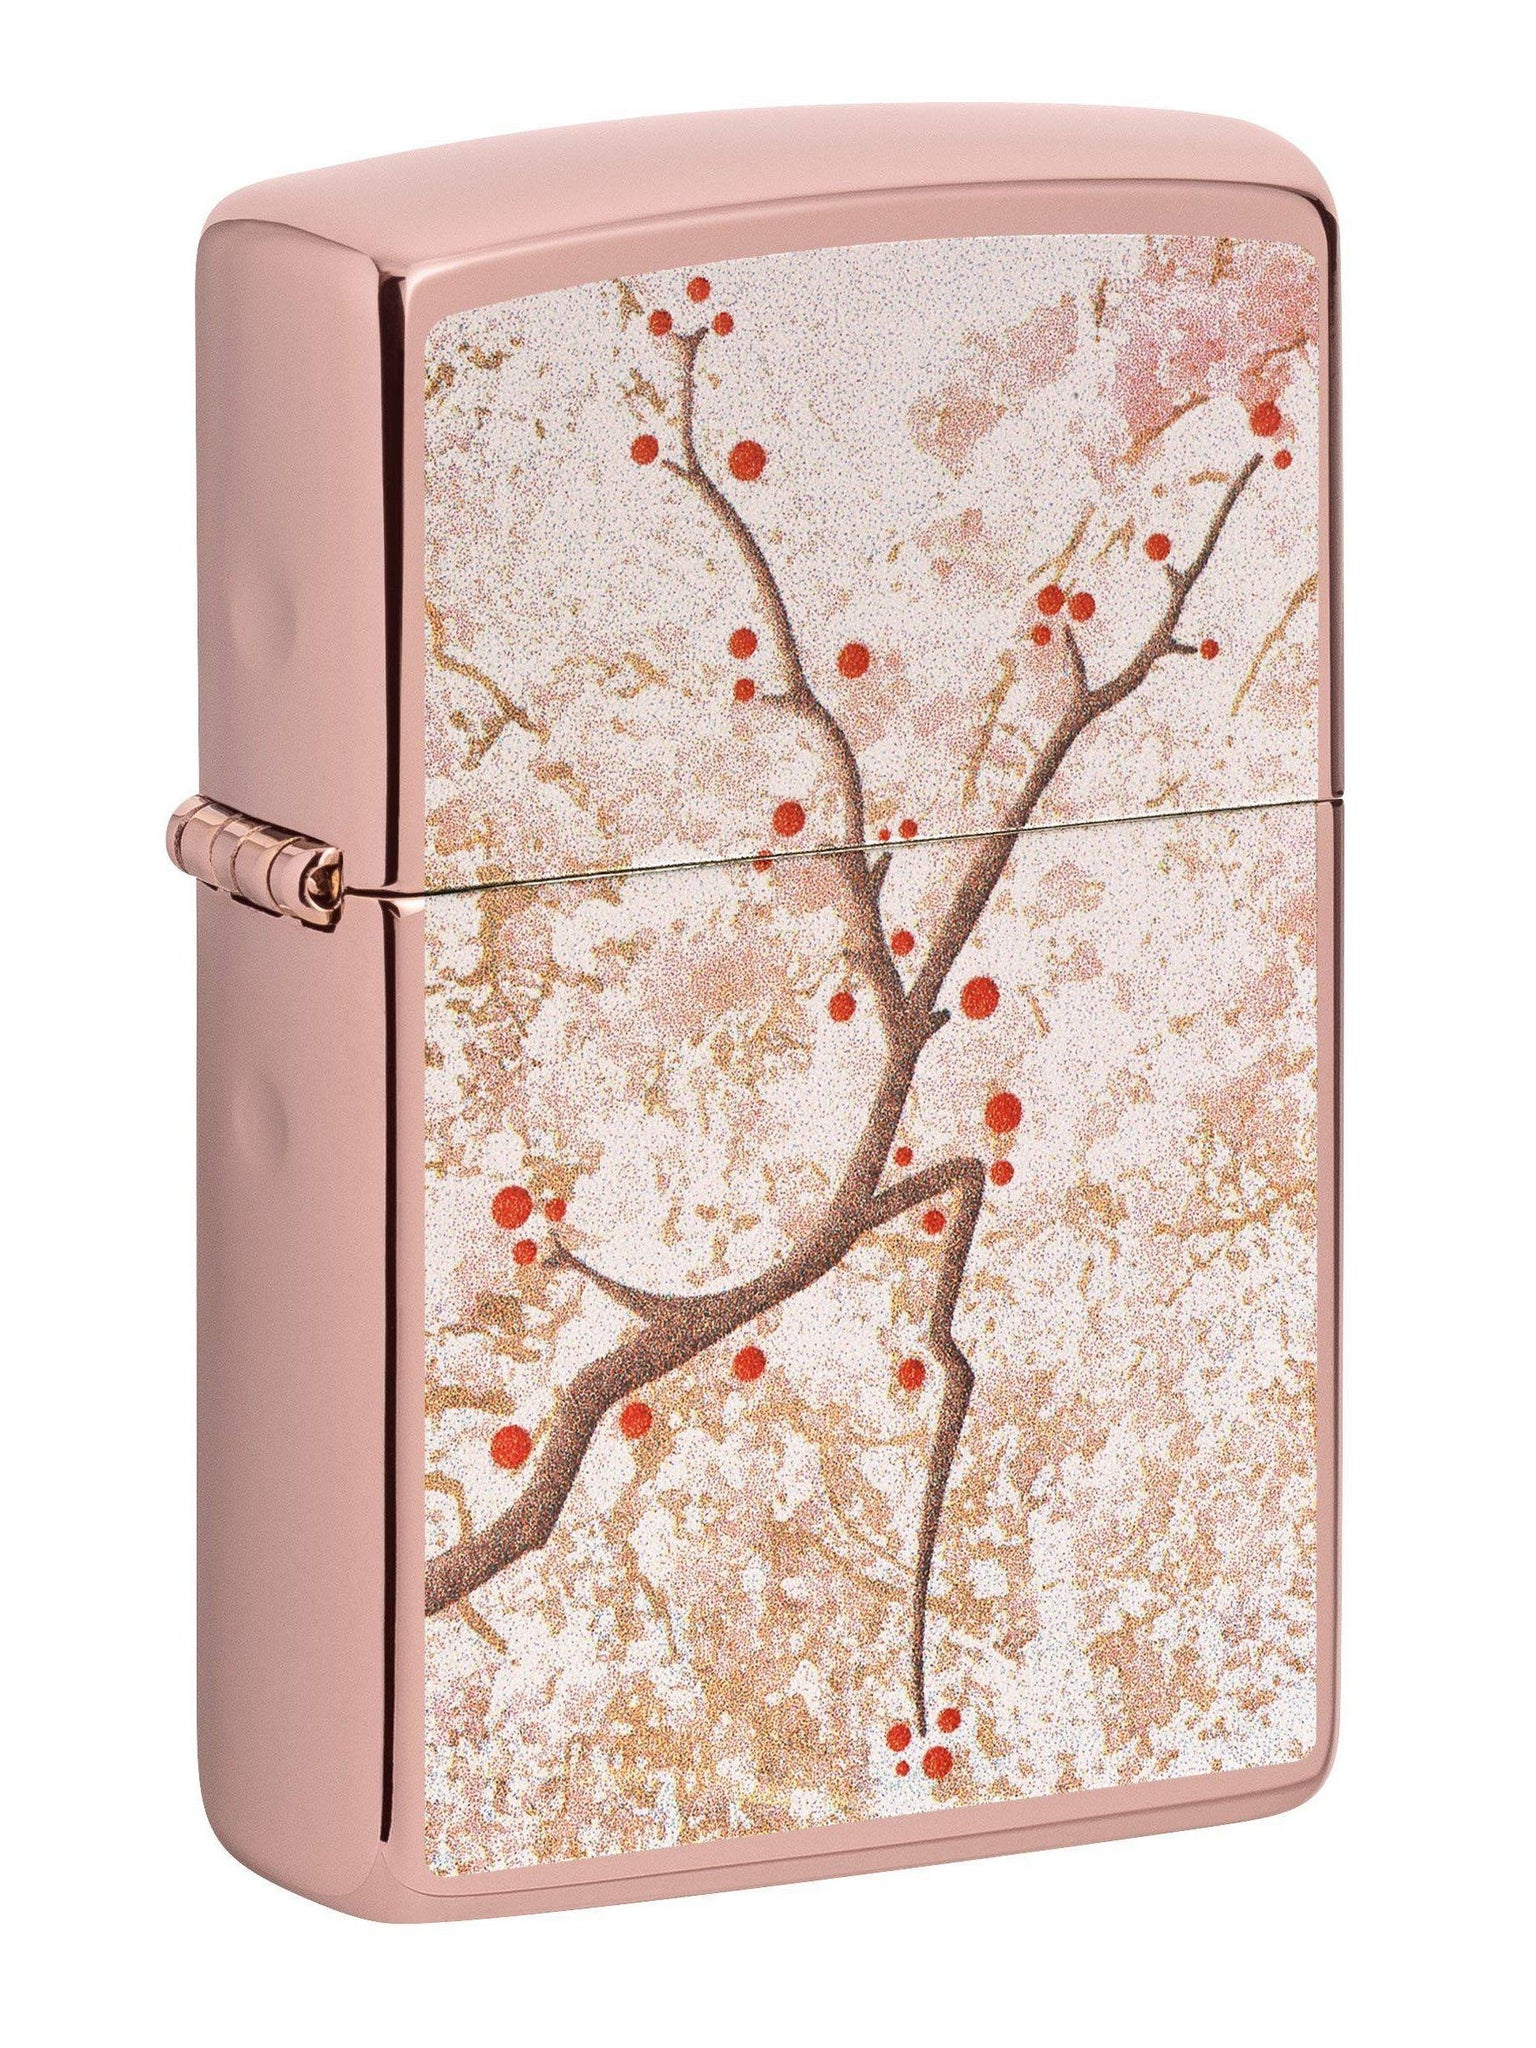 Zippo Lighter: Japanese Cherry Blossom - Rose Gold 49486